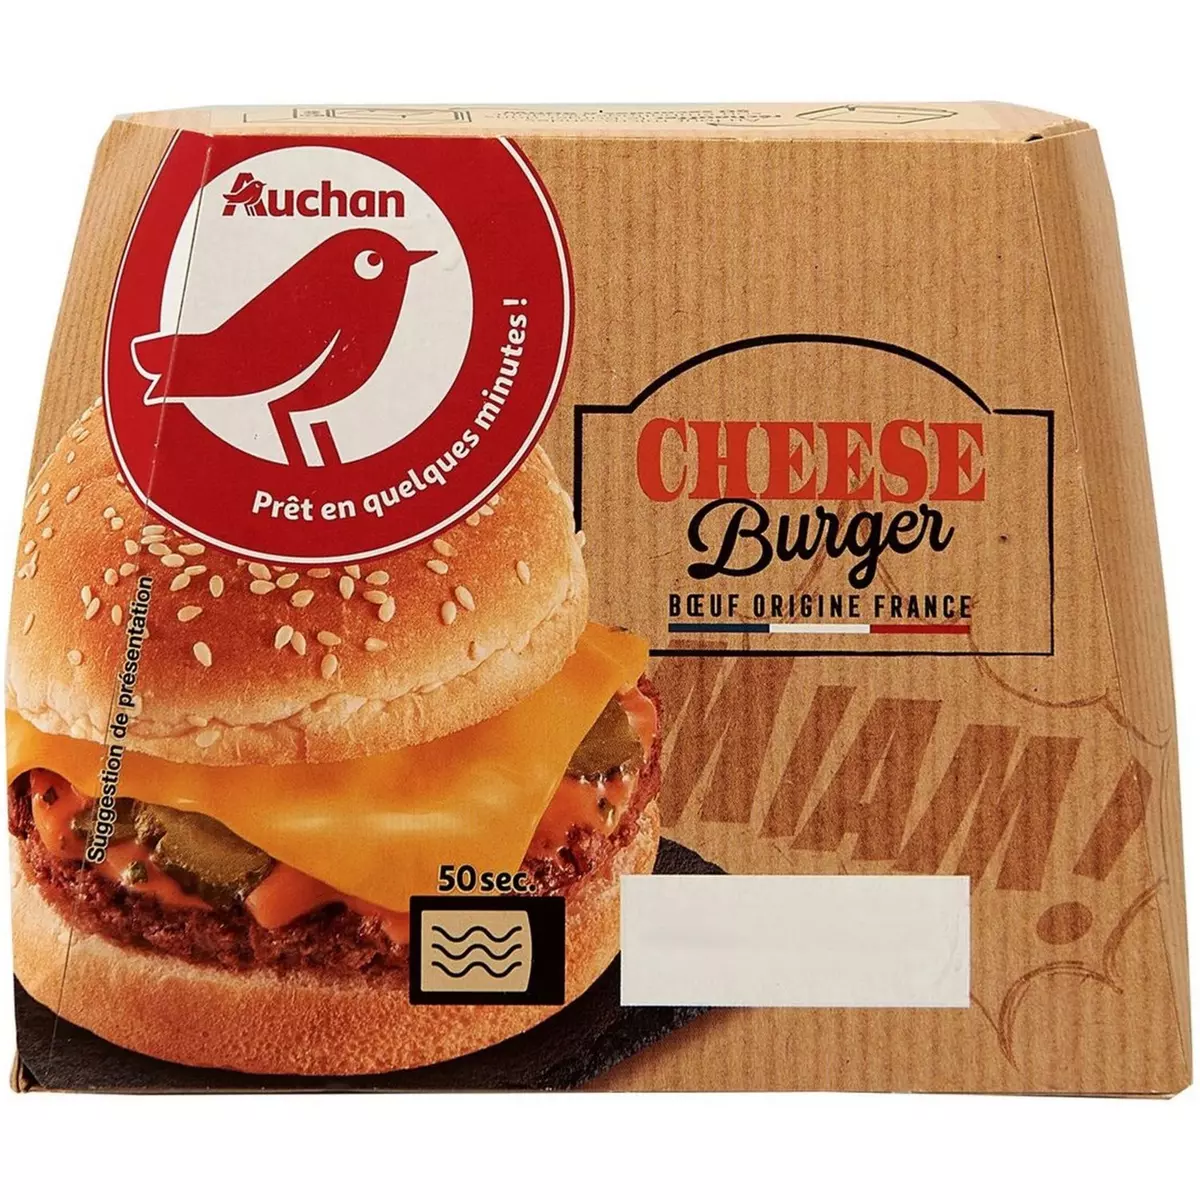 AUCHAN Cheese burger 195g